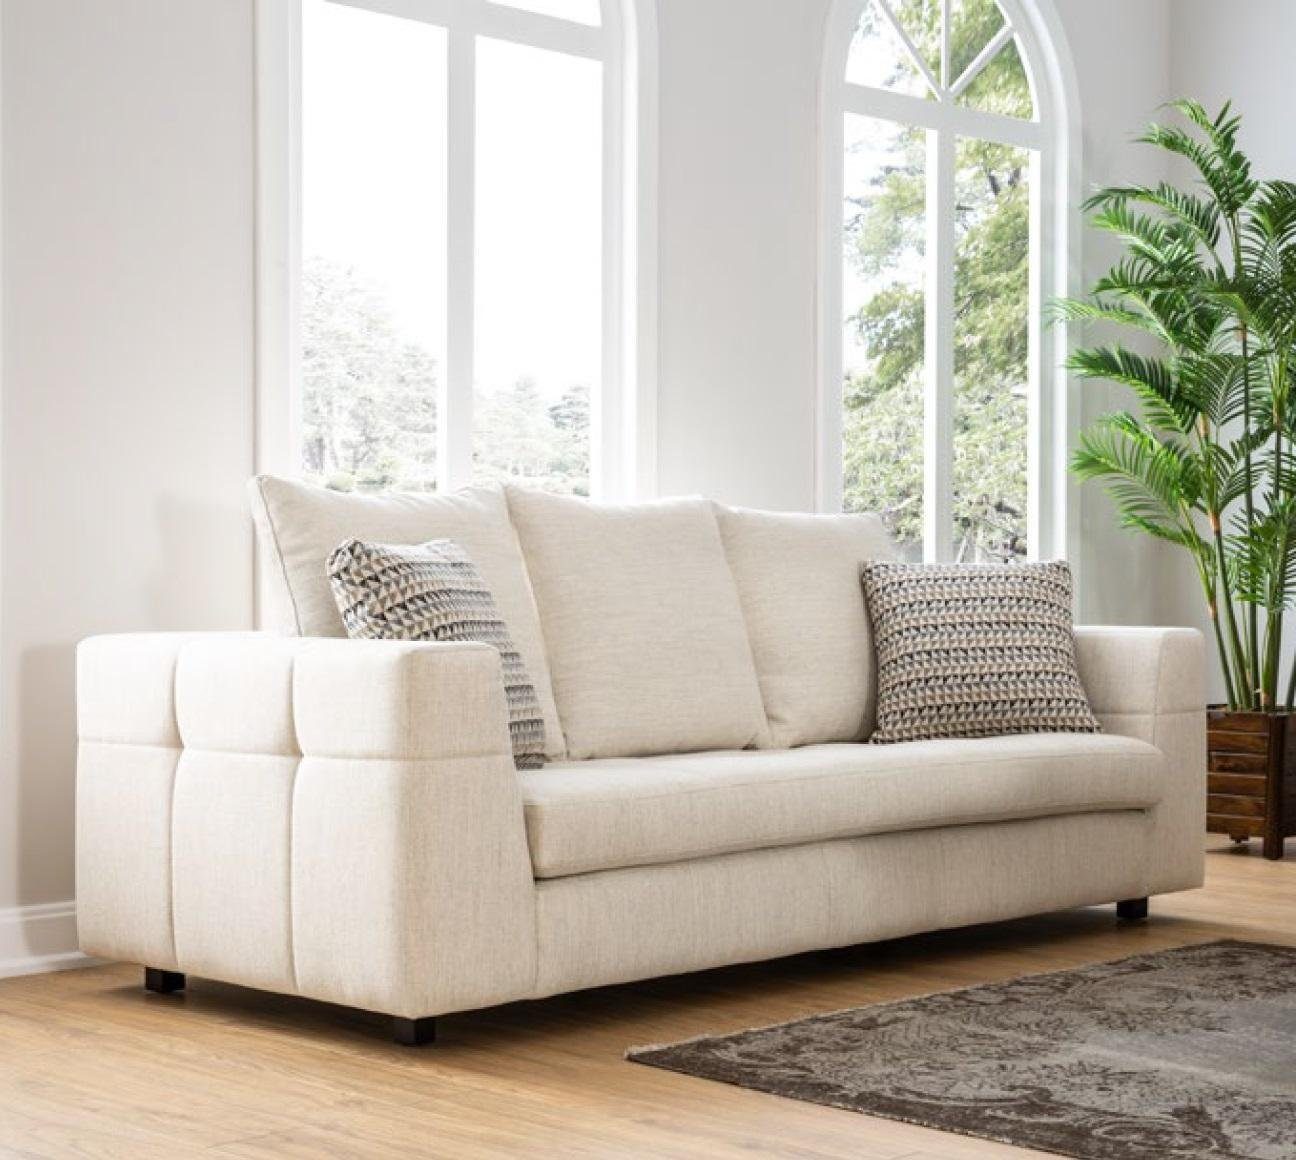 JVmoebel 3-Sitzer Modernes Sofa 3 Sitzer Polstersofa weiß Textill Design Couch Sofas